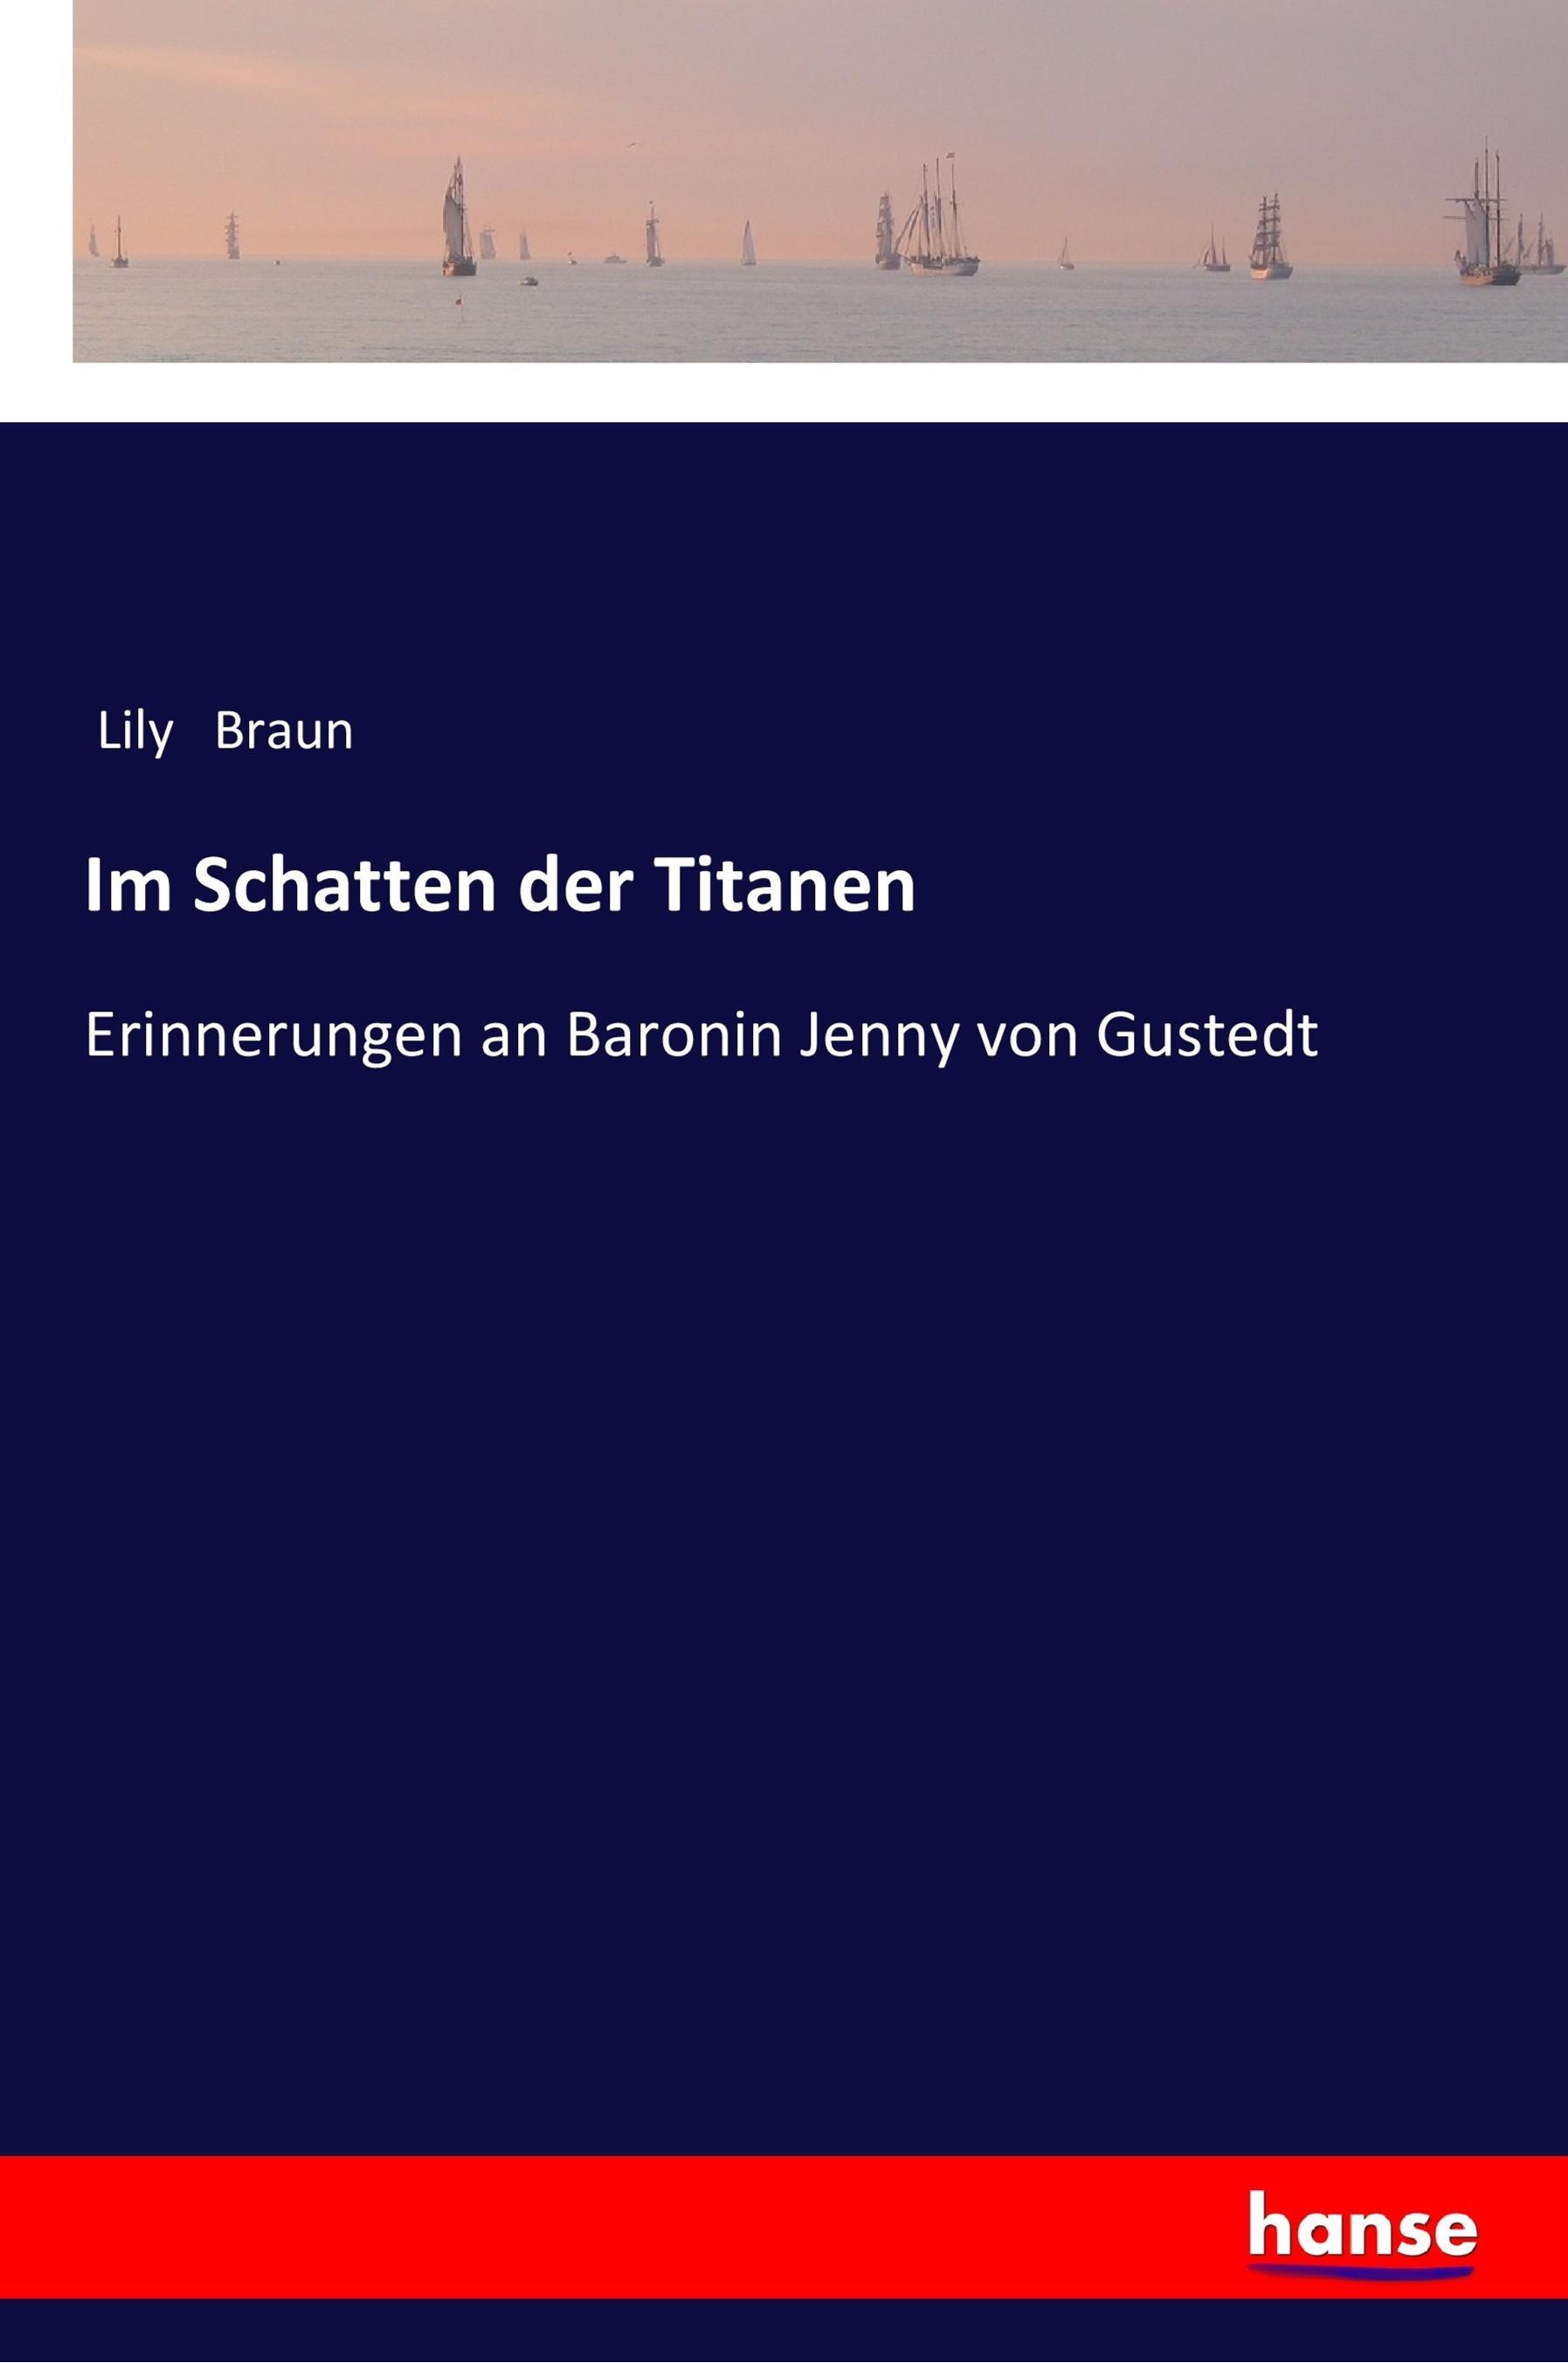 Im Schatten der Titanen / Erinnerungen an Baronin Jenny von Gustedt / Lily Braun / Taschenbuch / Paperback / 480 S. / Deutsch / 2017 / hansebooks / EAN 9783337353629 - Braun, Lily